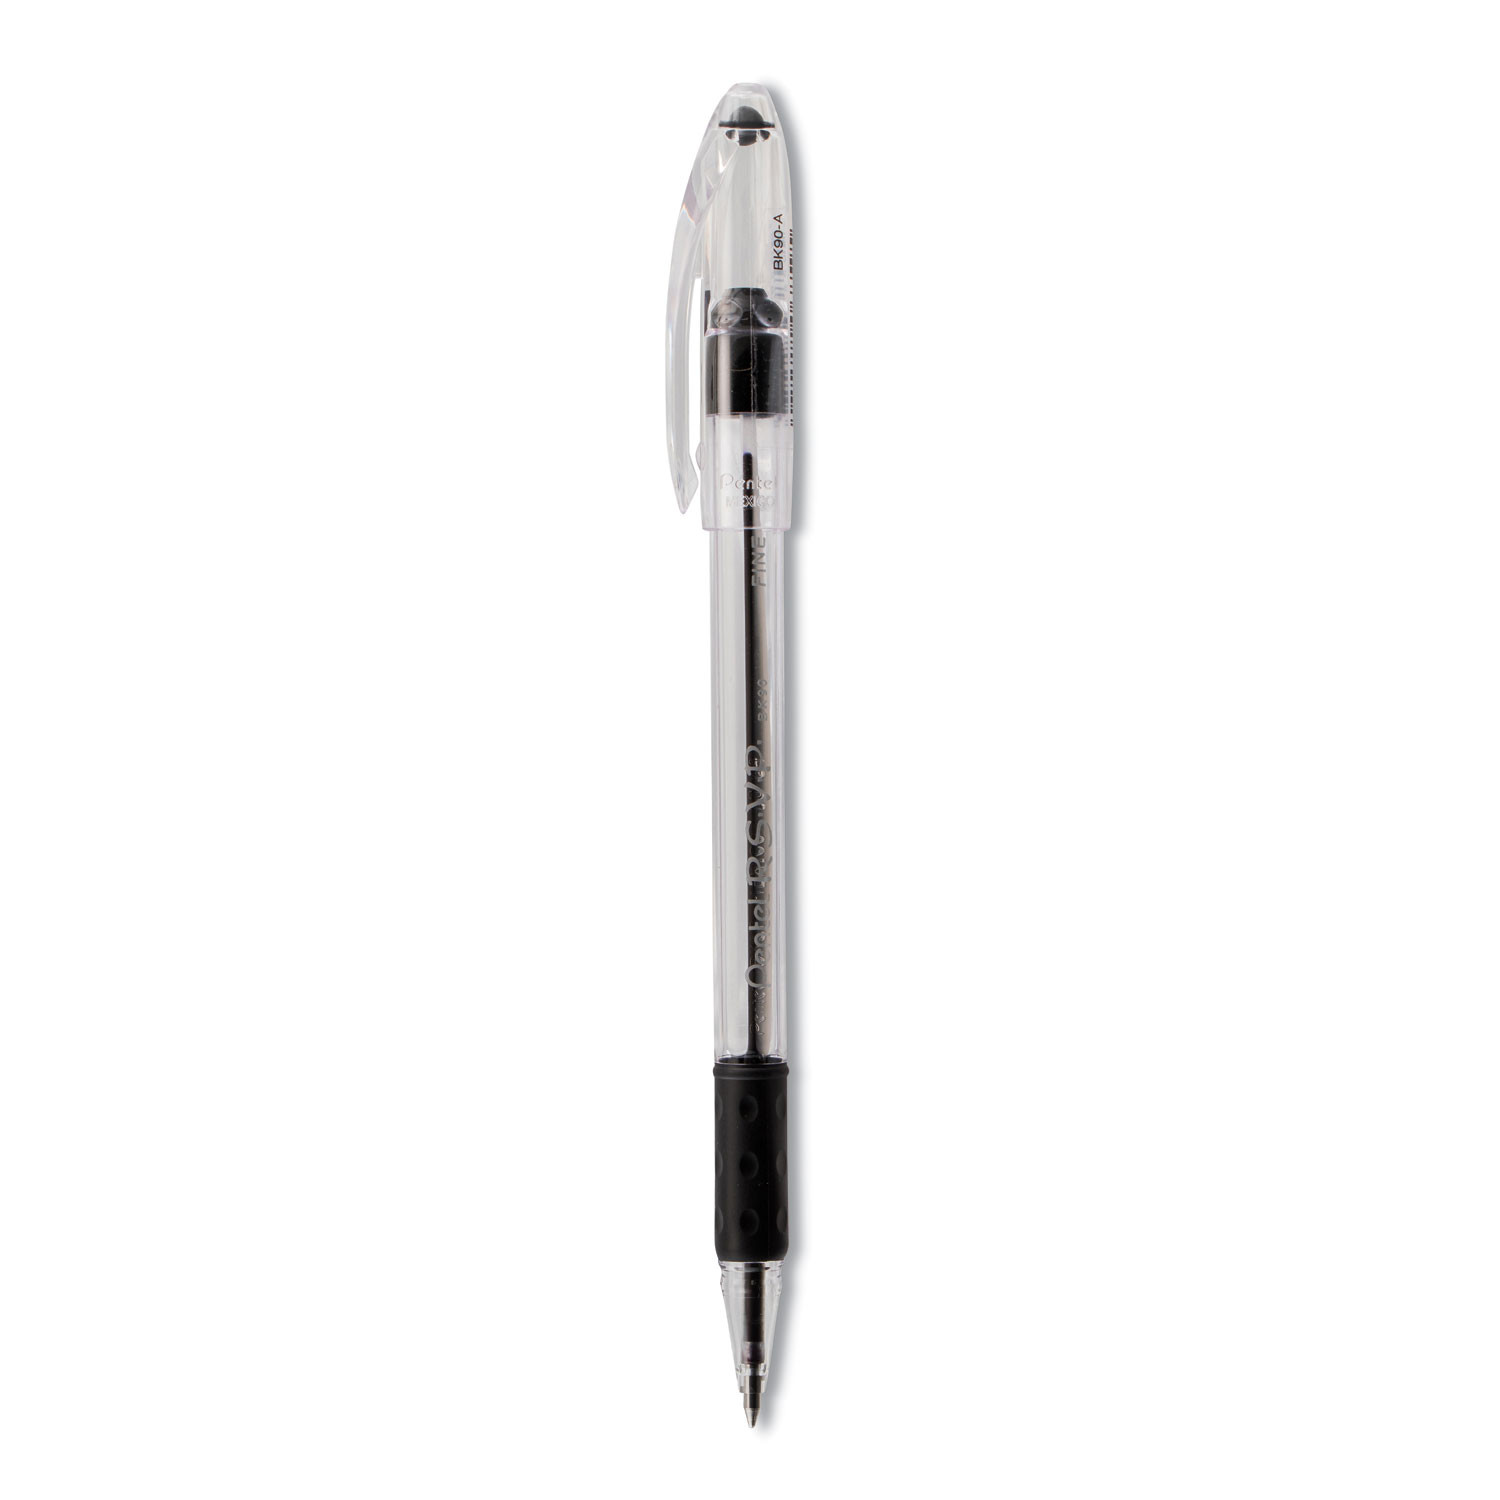 12 Pentel R.S.V.P. Ballpoint Pens, Black Ink Fine Point